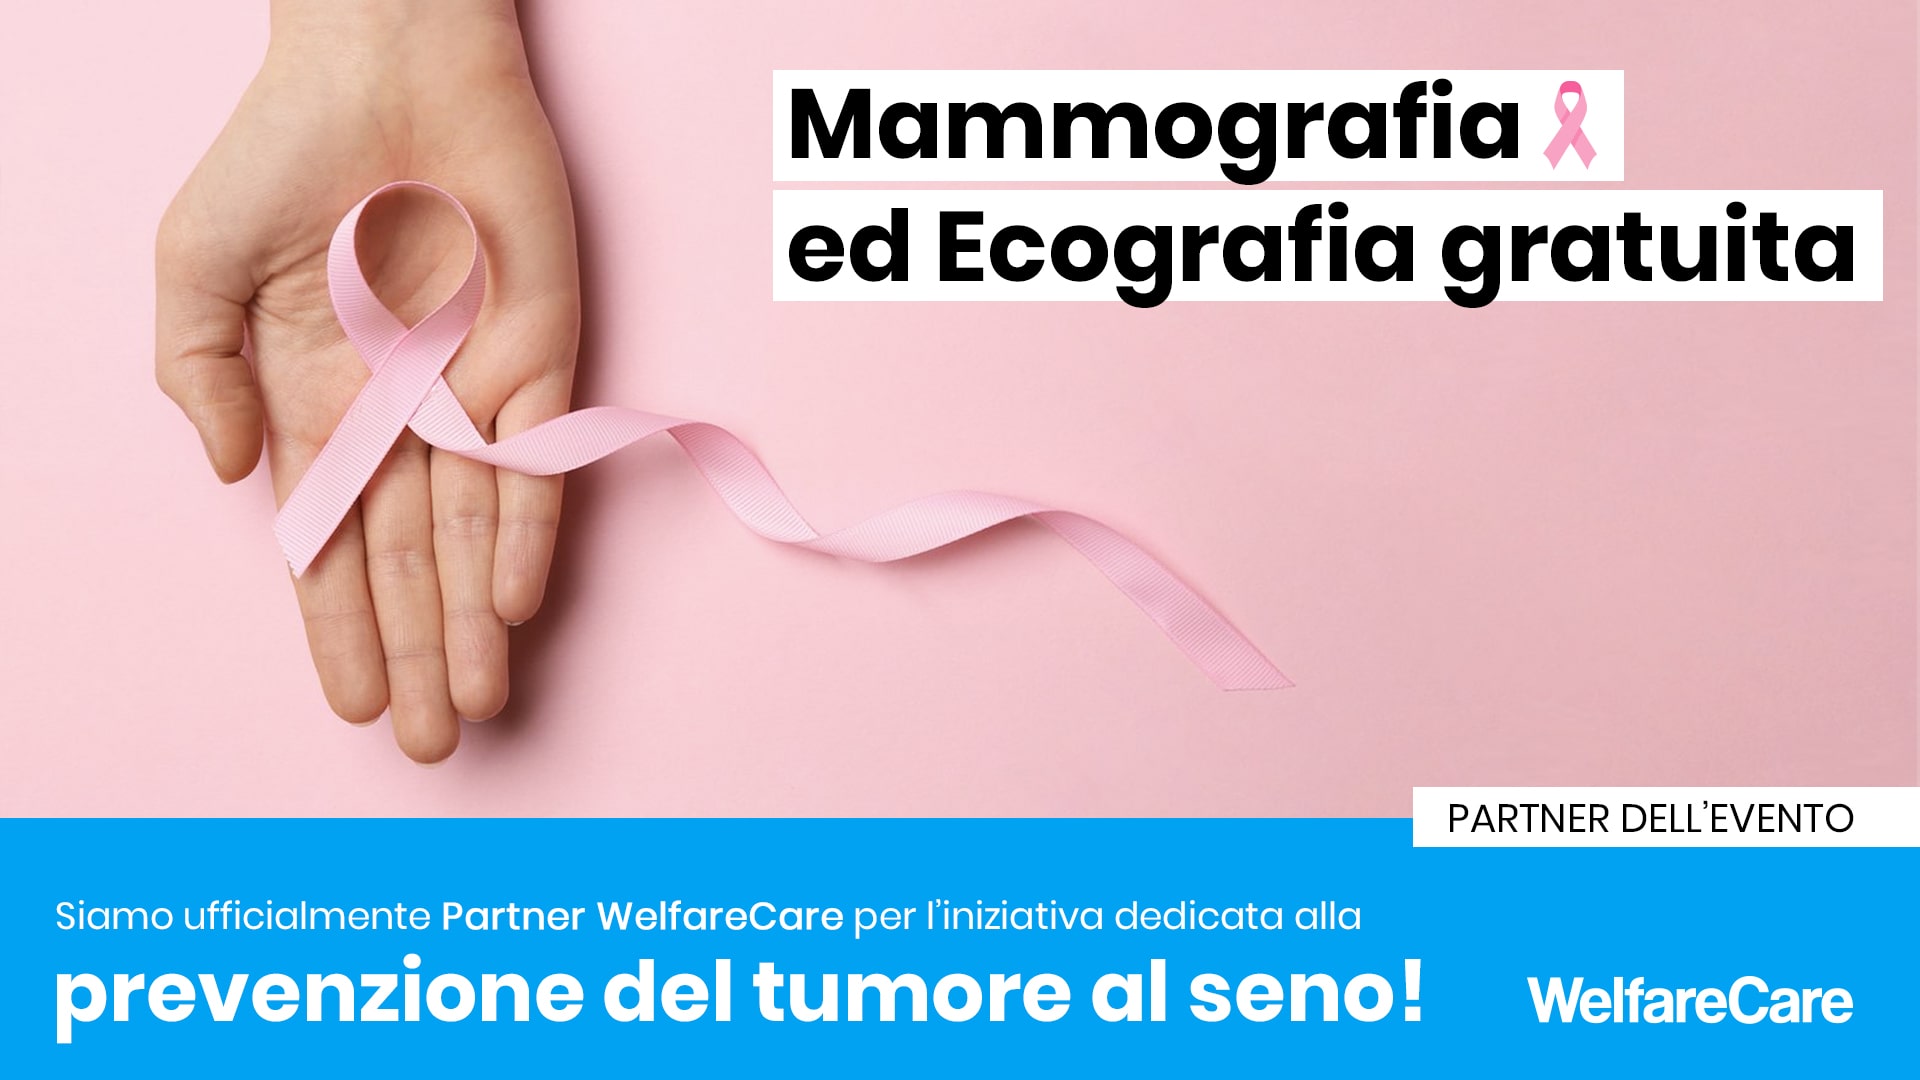 Wegma partner per la lotta contro il tumore al seno